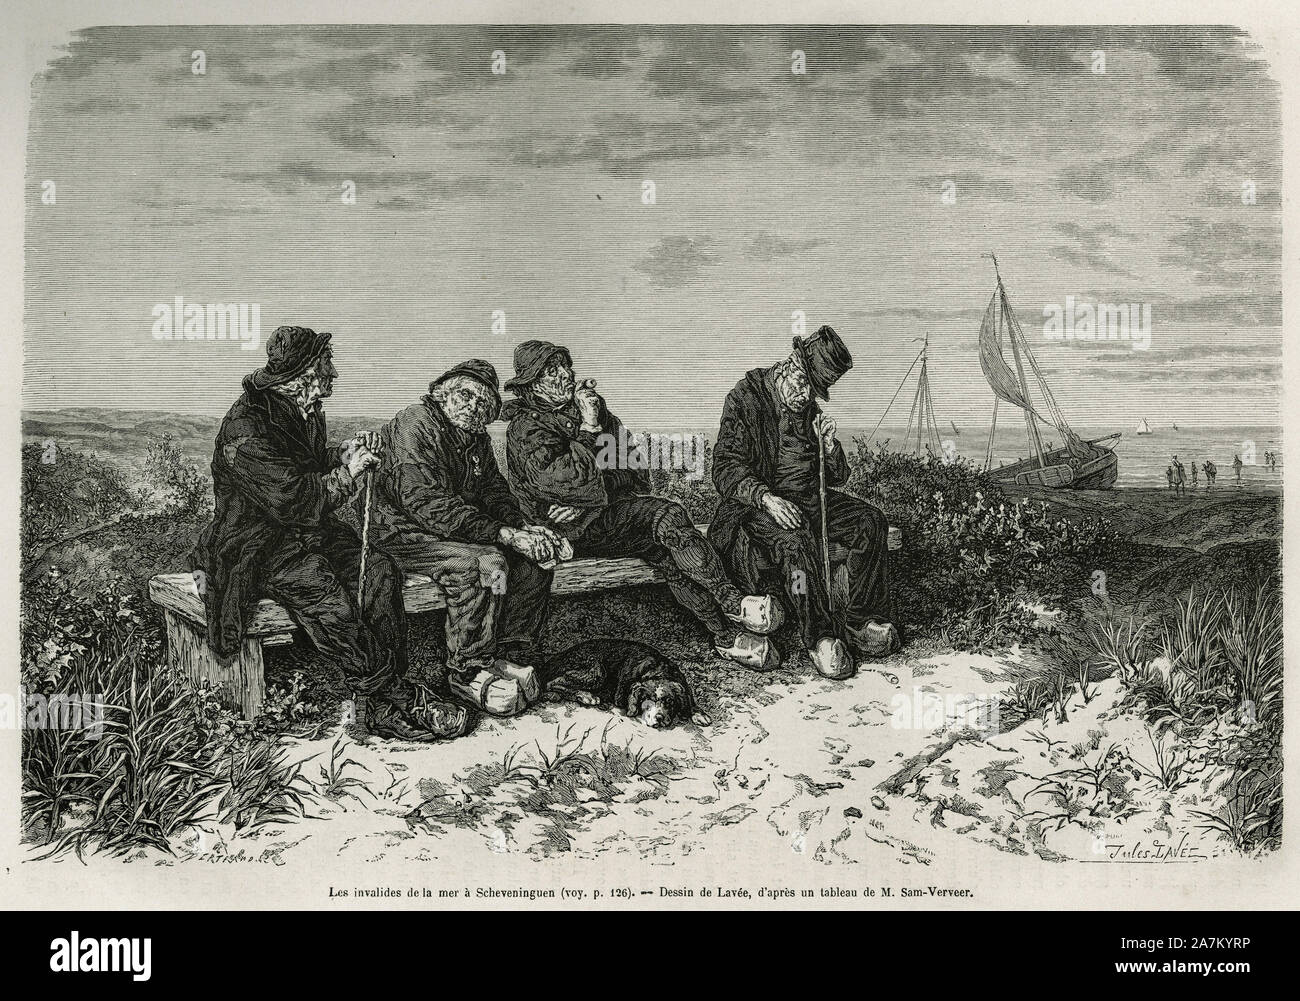 Les invalides de la mer a Schevningen( Pays Bas), gravure d'apres un dessin de Lavee, pour illustrer le recit la Neerlande, par Charles de Coster, en Stock Photo